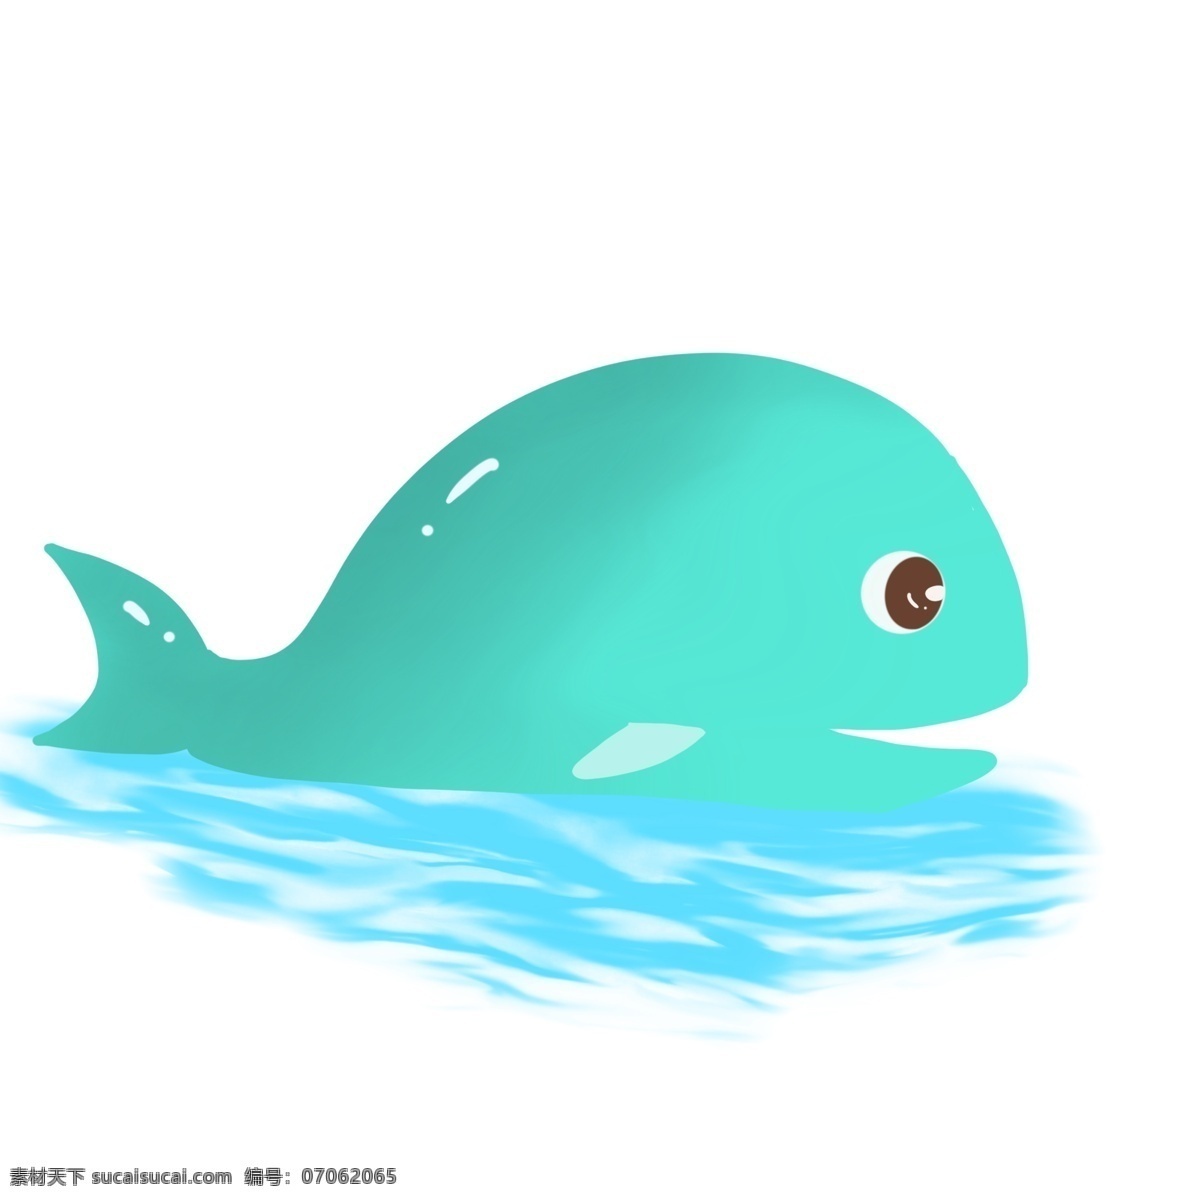 海底动物鲸鱼 海底 动物 鲸鱼 可爱 蓝色 卡通